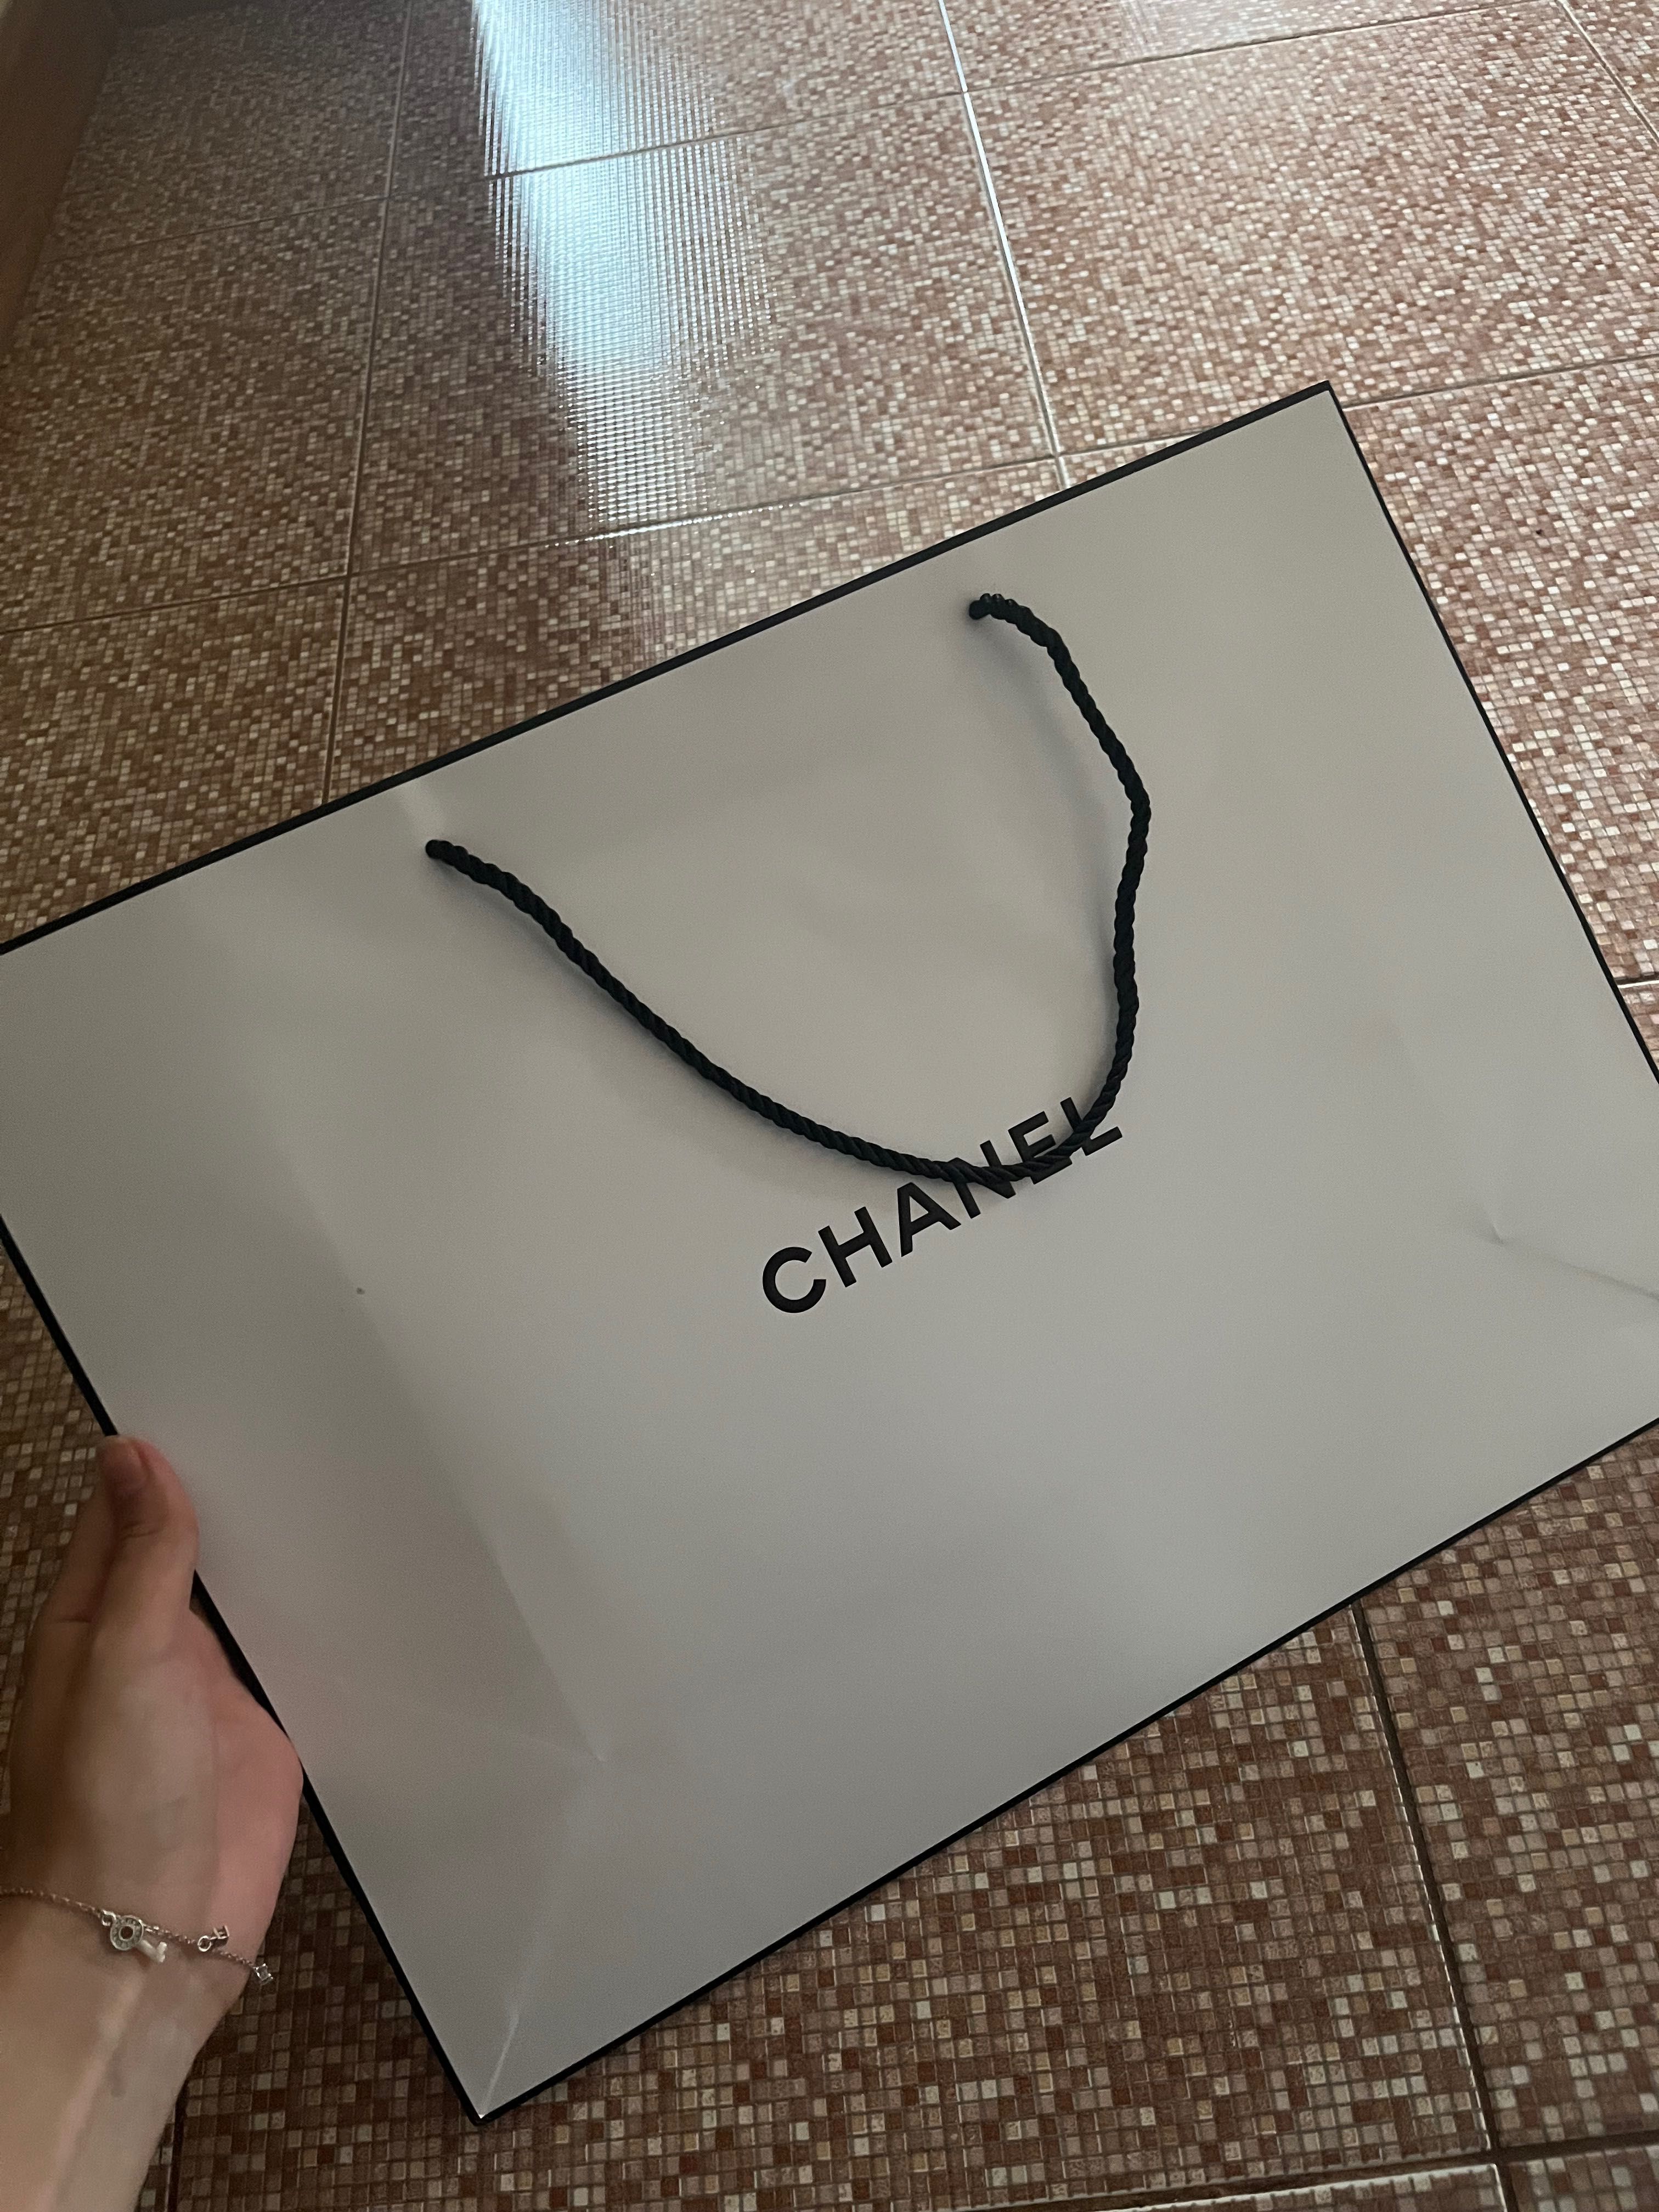 Chanel vip gift bag